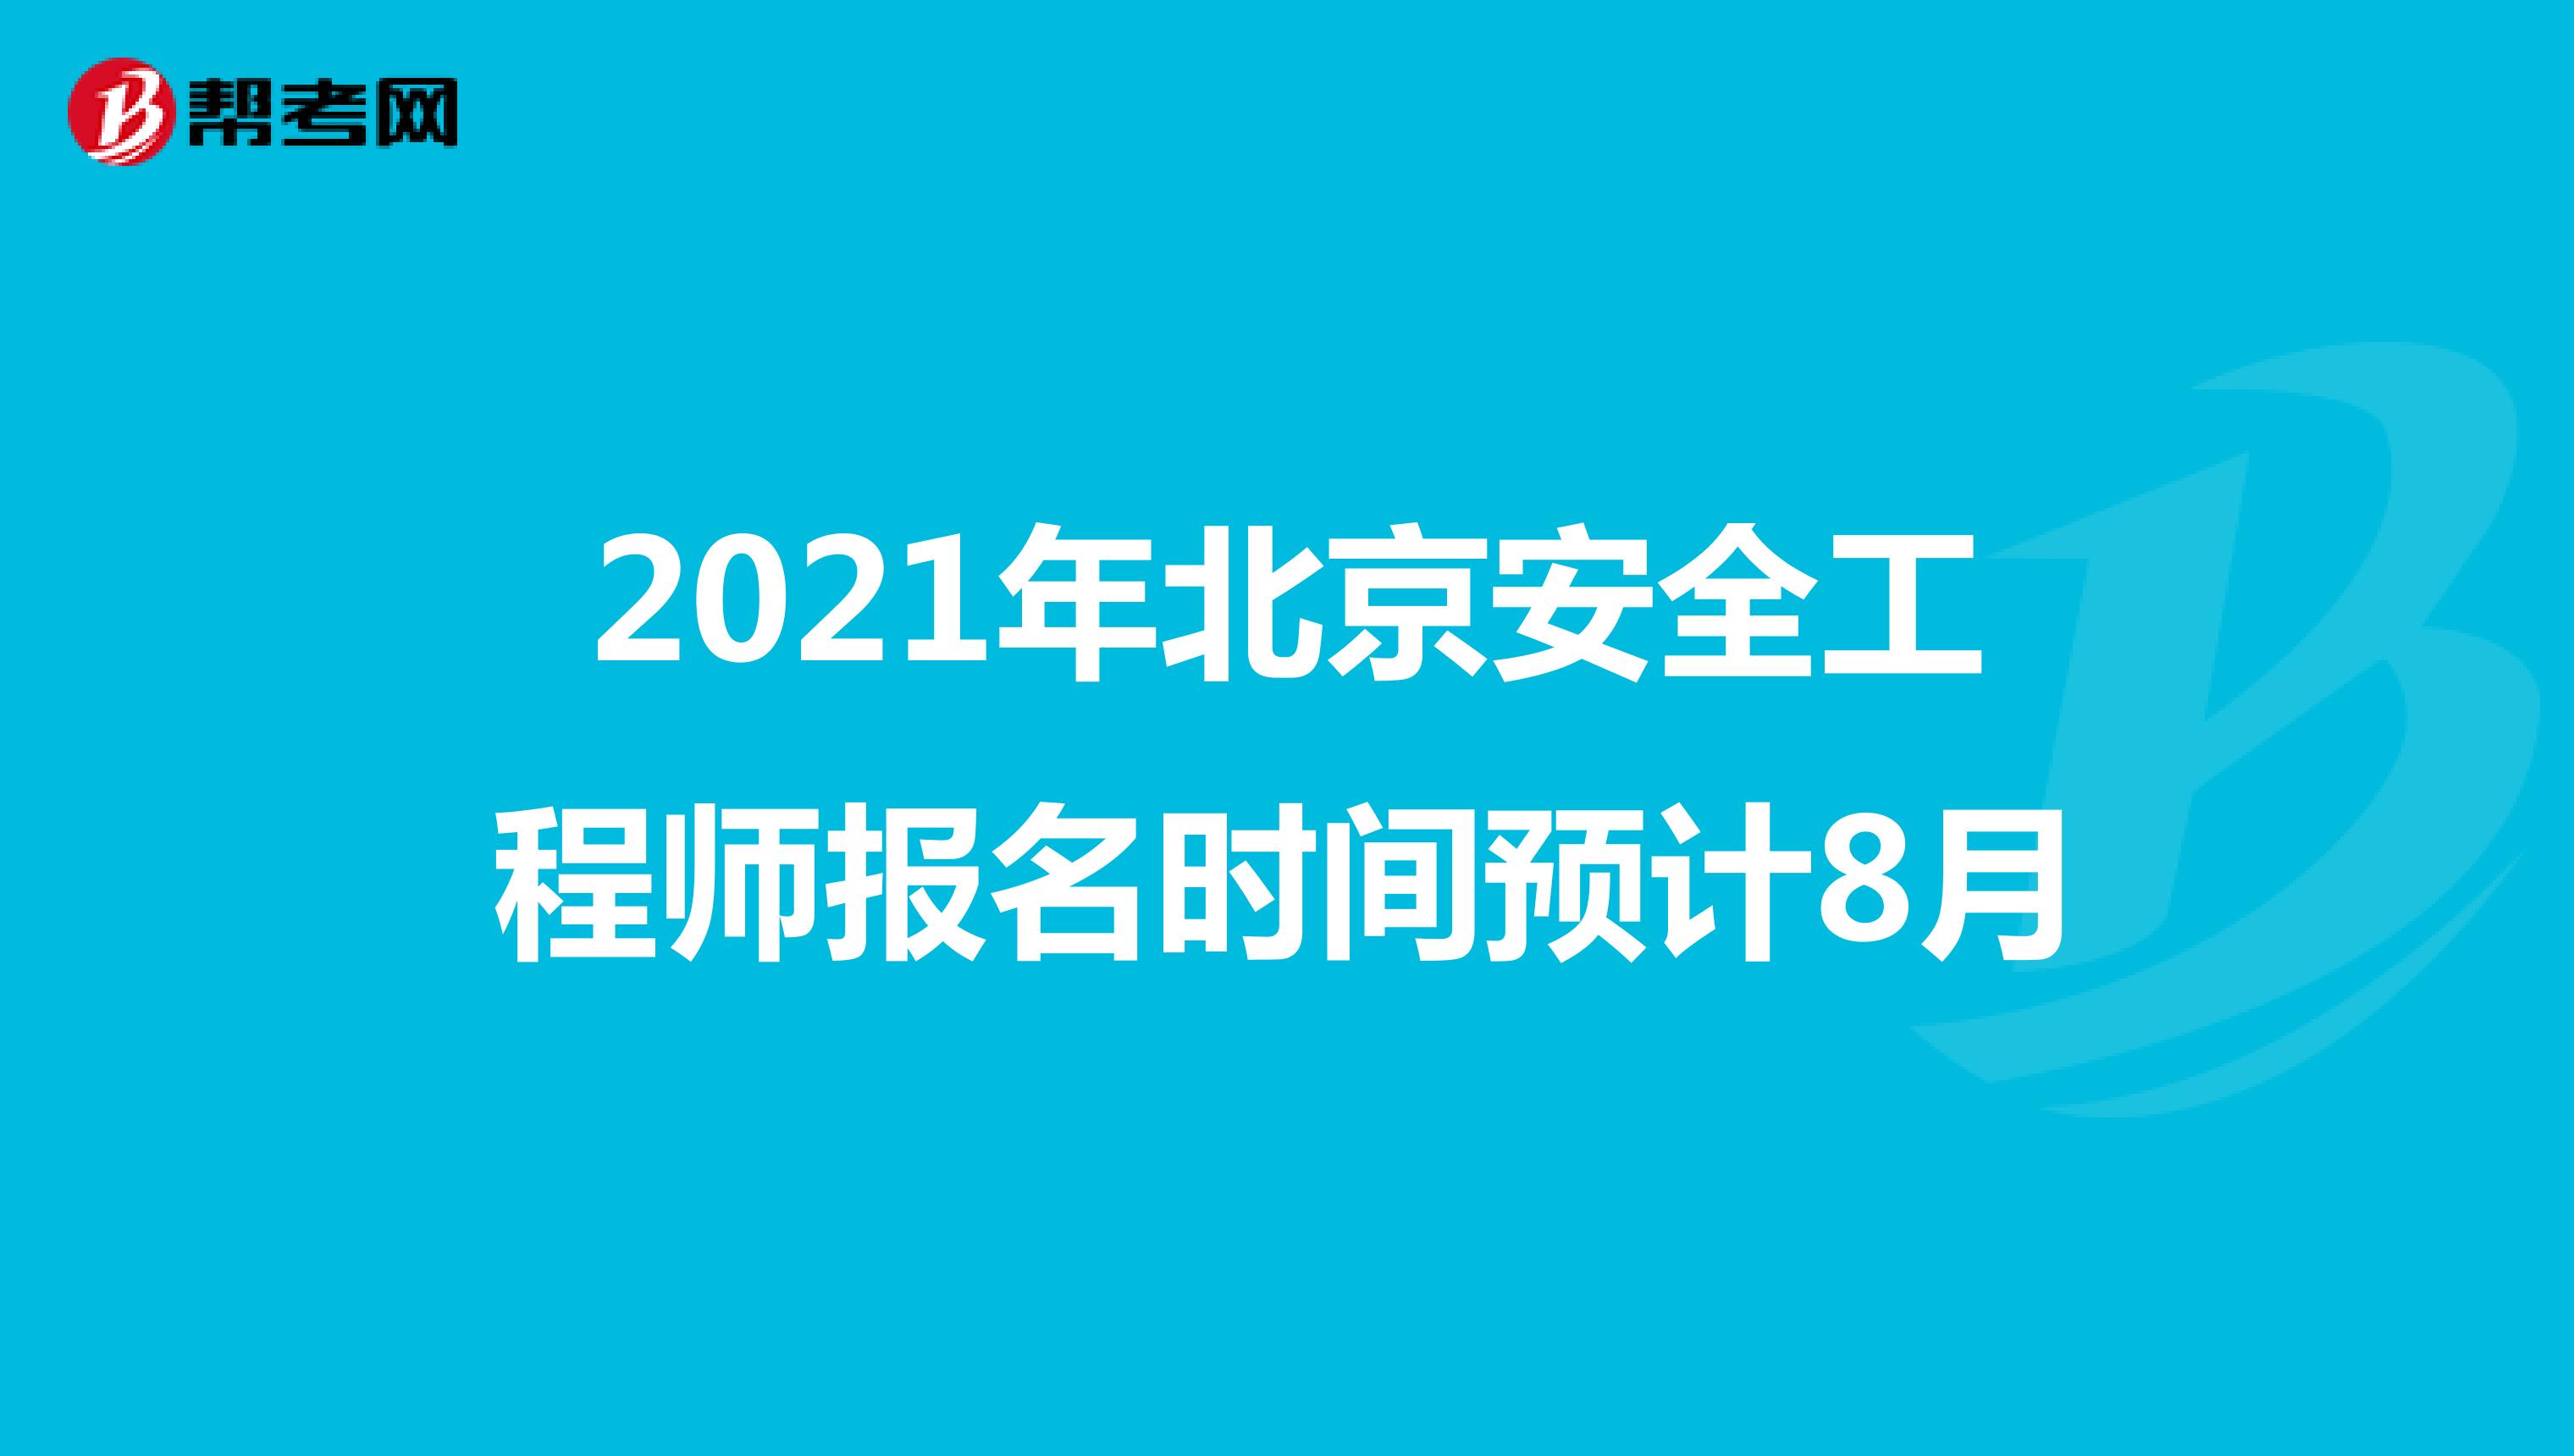 2021年北京安全工程师报名时间预计8月